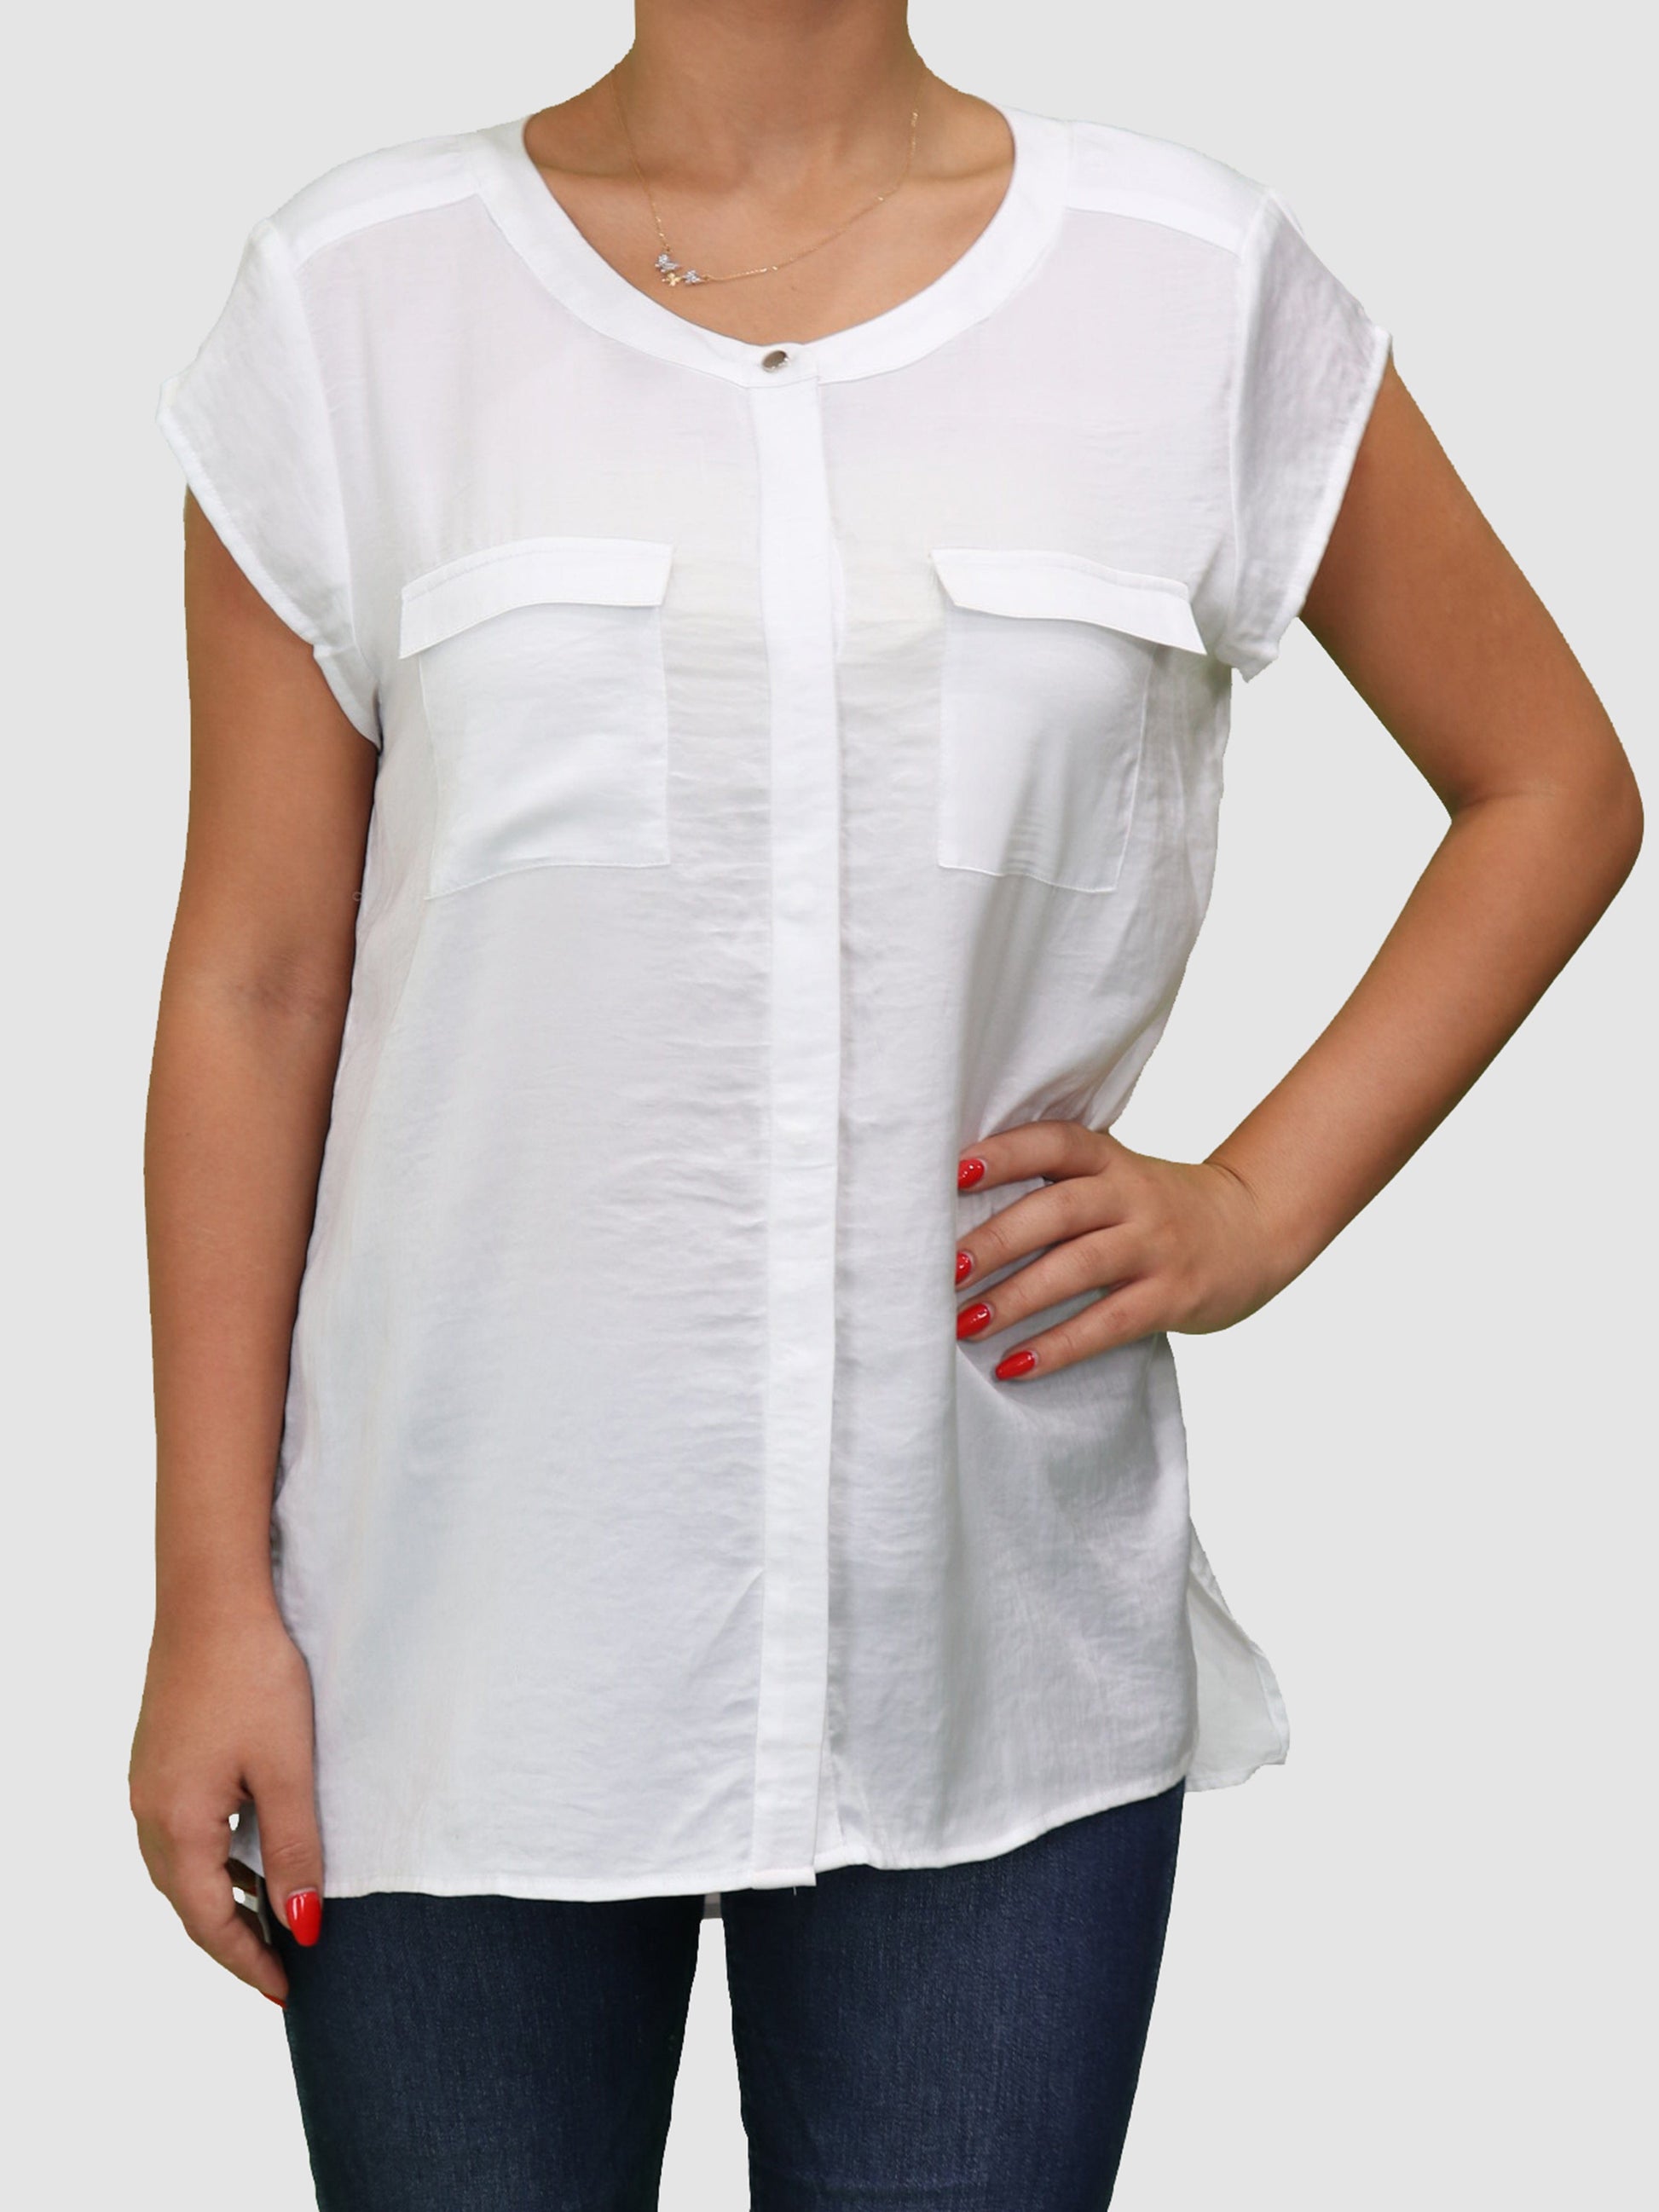 CHICO'S Womens Tops White / Medium Shirt Sleeveless